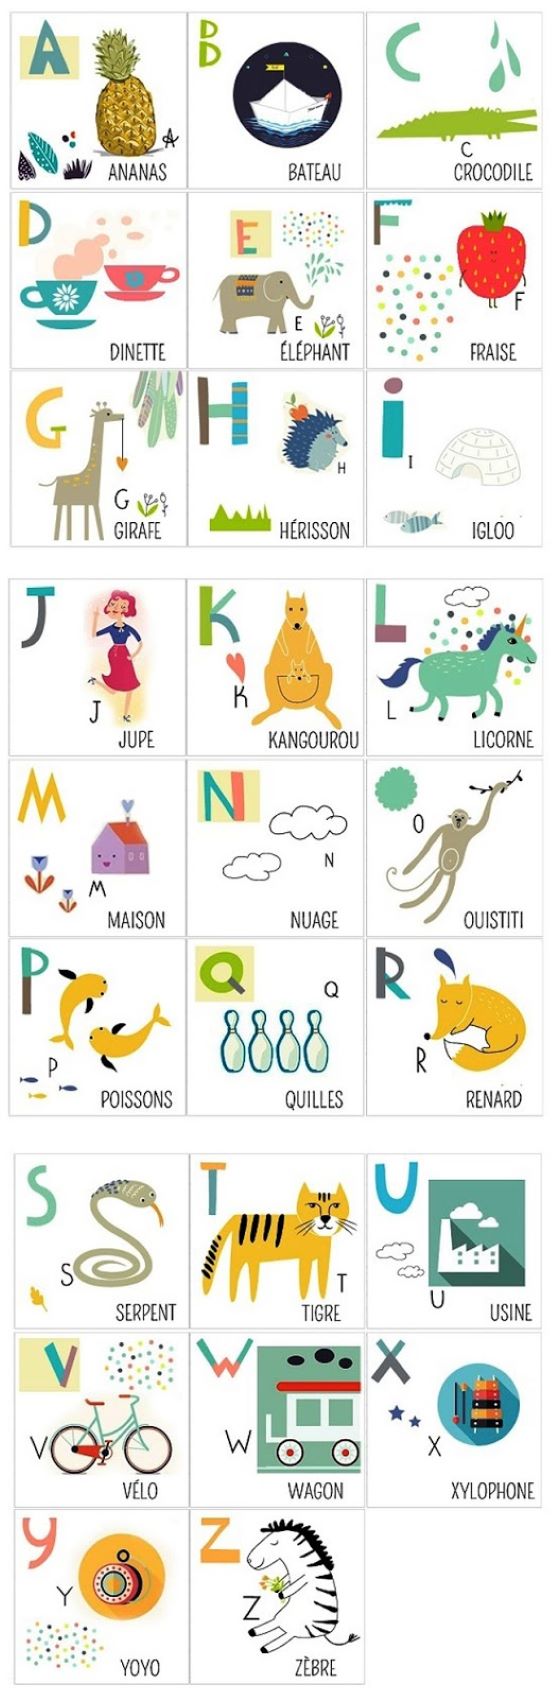 Le français en images pour les débutants: L'alphabet et les